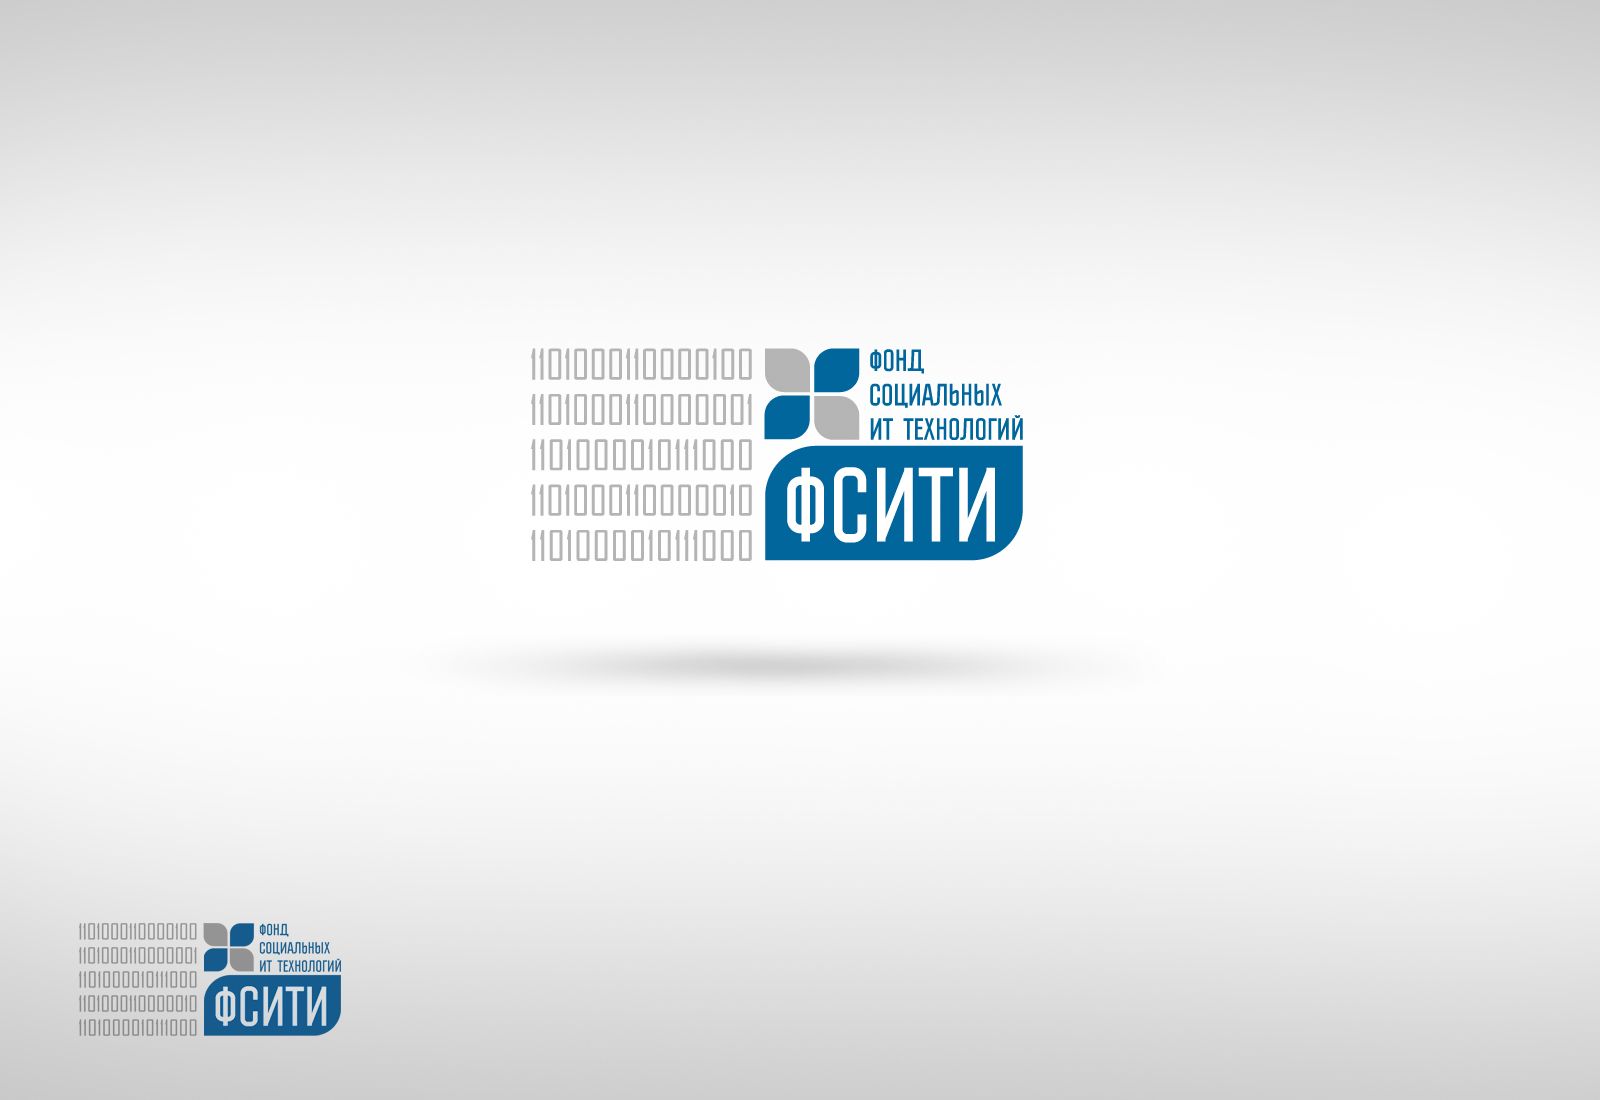 Логотип для ФСИТИ - Фонд Социальных IT Инноваций  - дизайнер densacoin